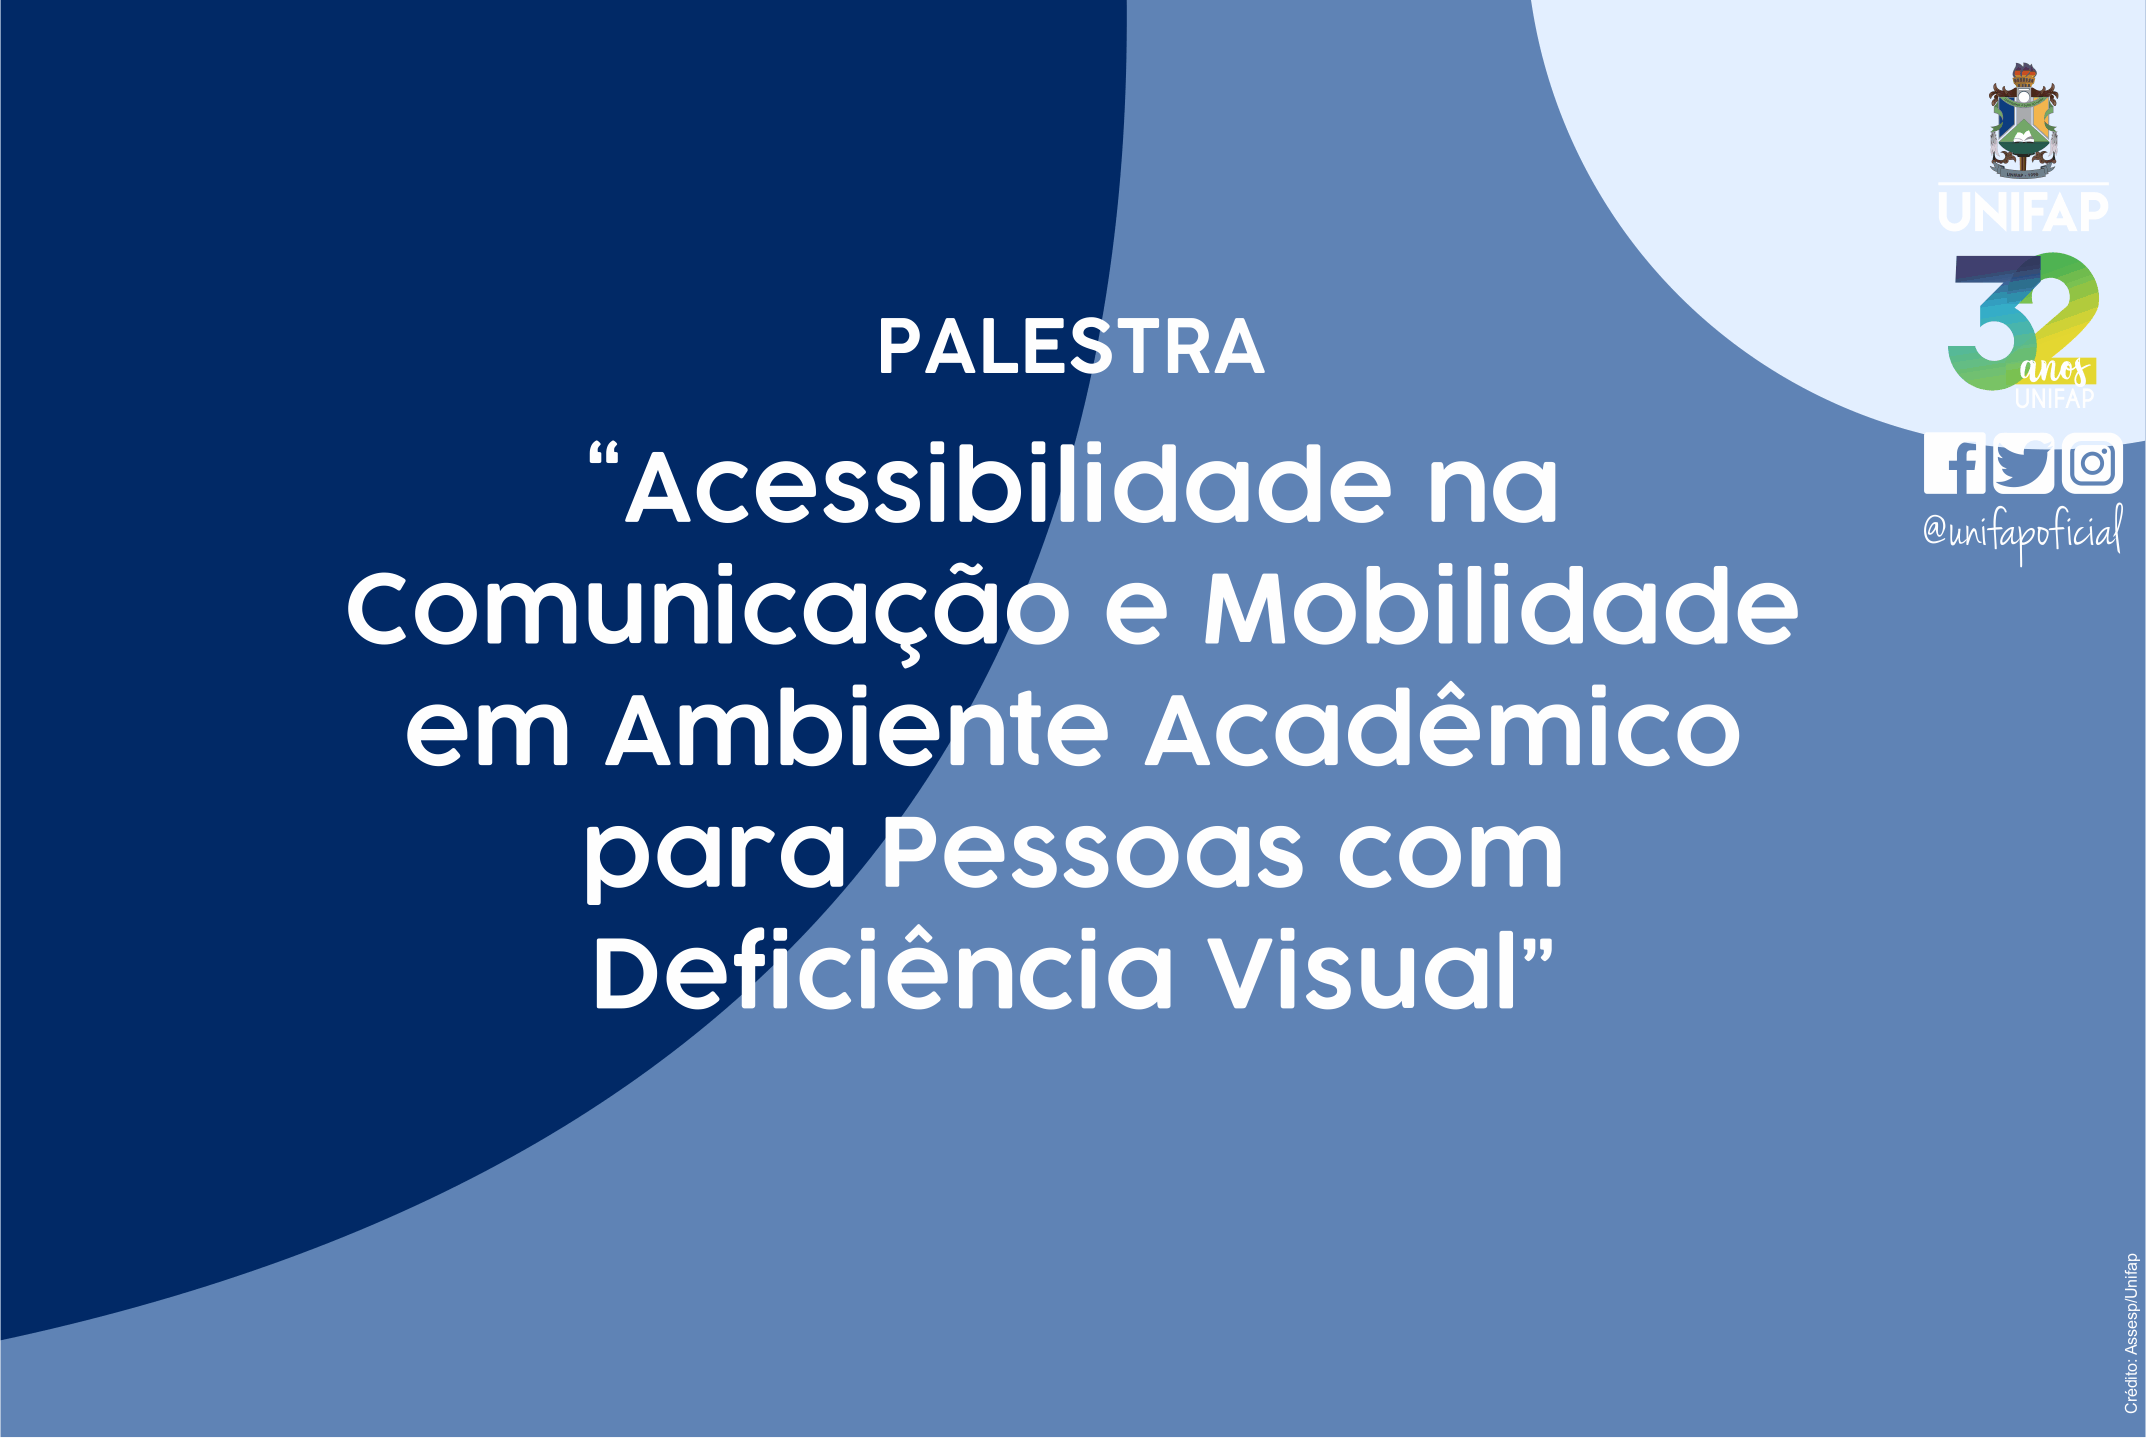 Palestra abordará acessibilidade para pessoas com deficiência visual em ambiente acadêmico